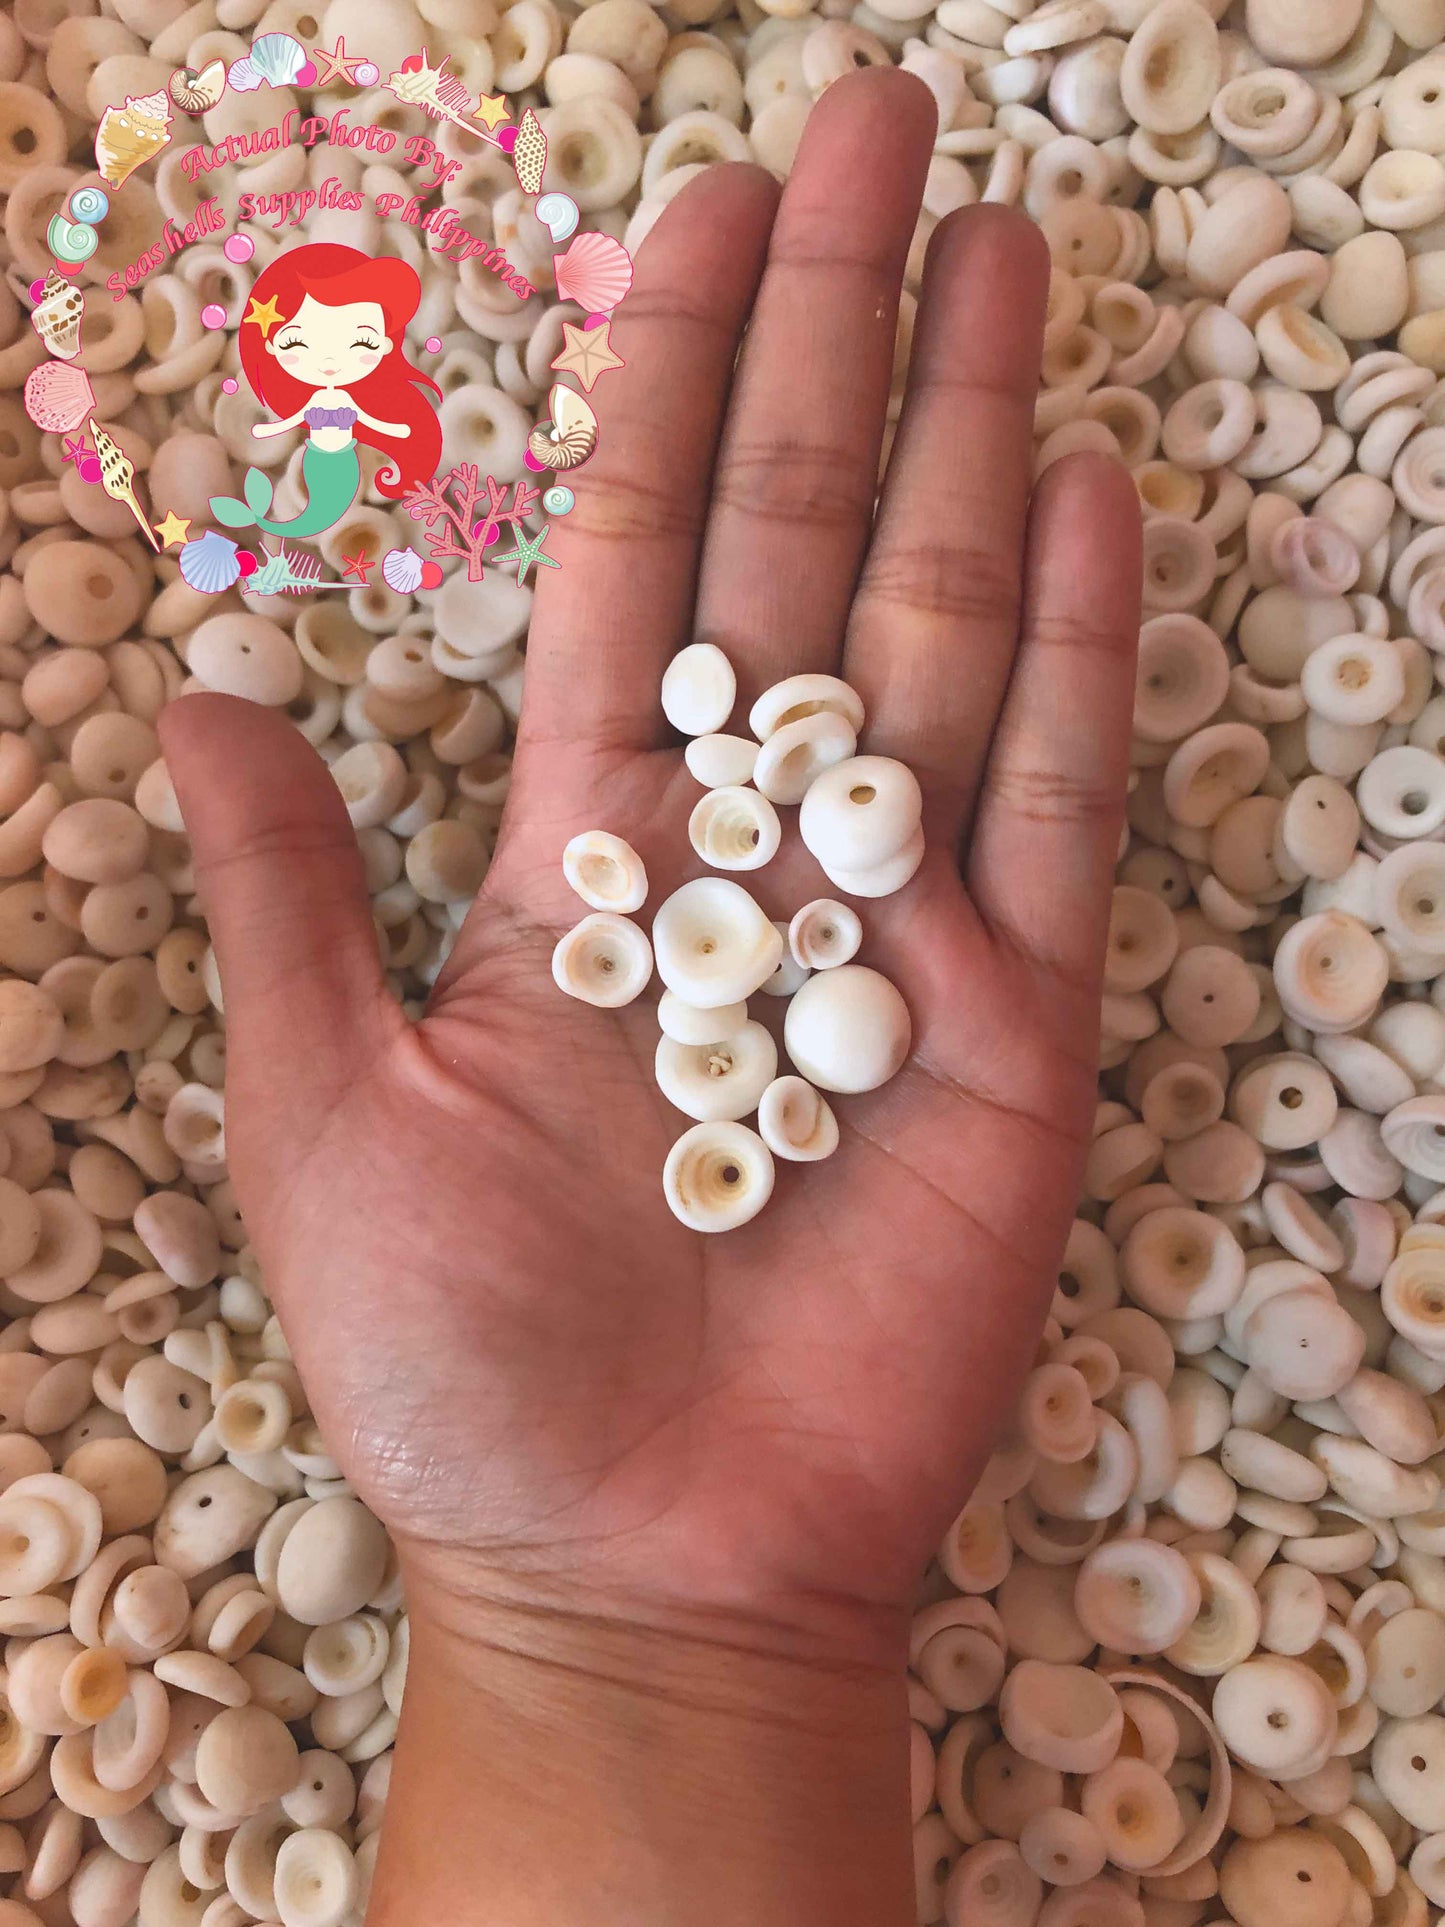 1 Kilo | Puka Shell | Small | 0.5 - 1 cm | Seashells | Sea shells